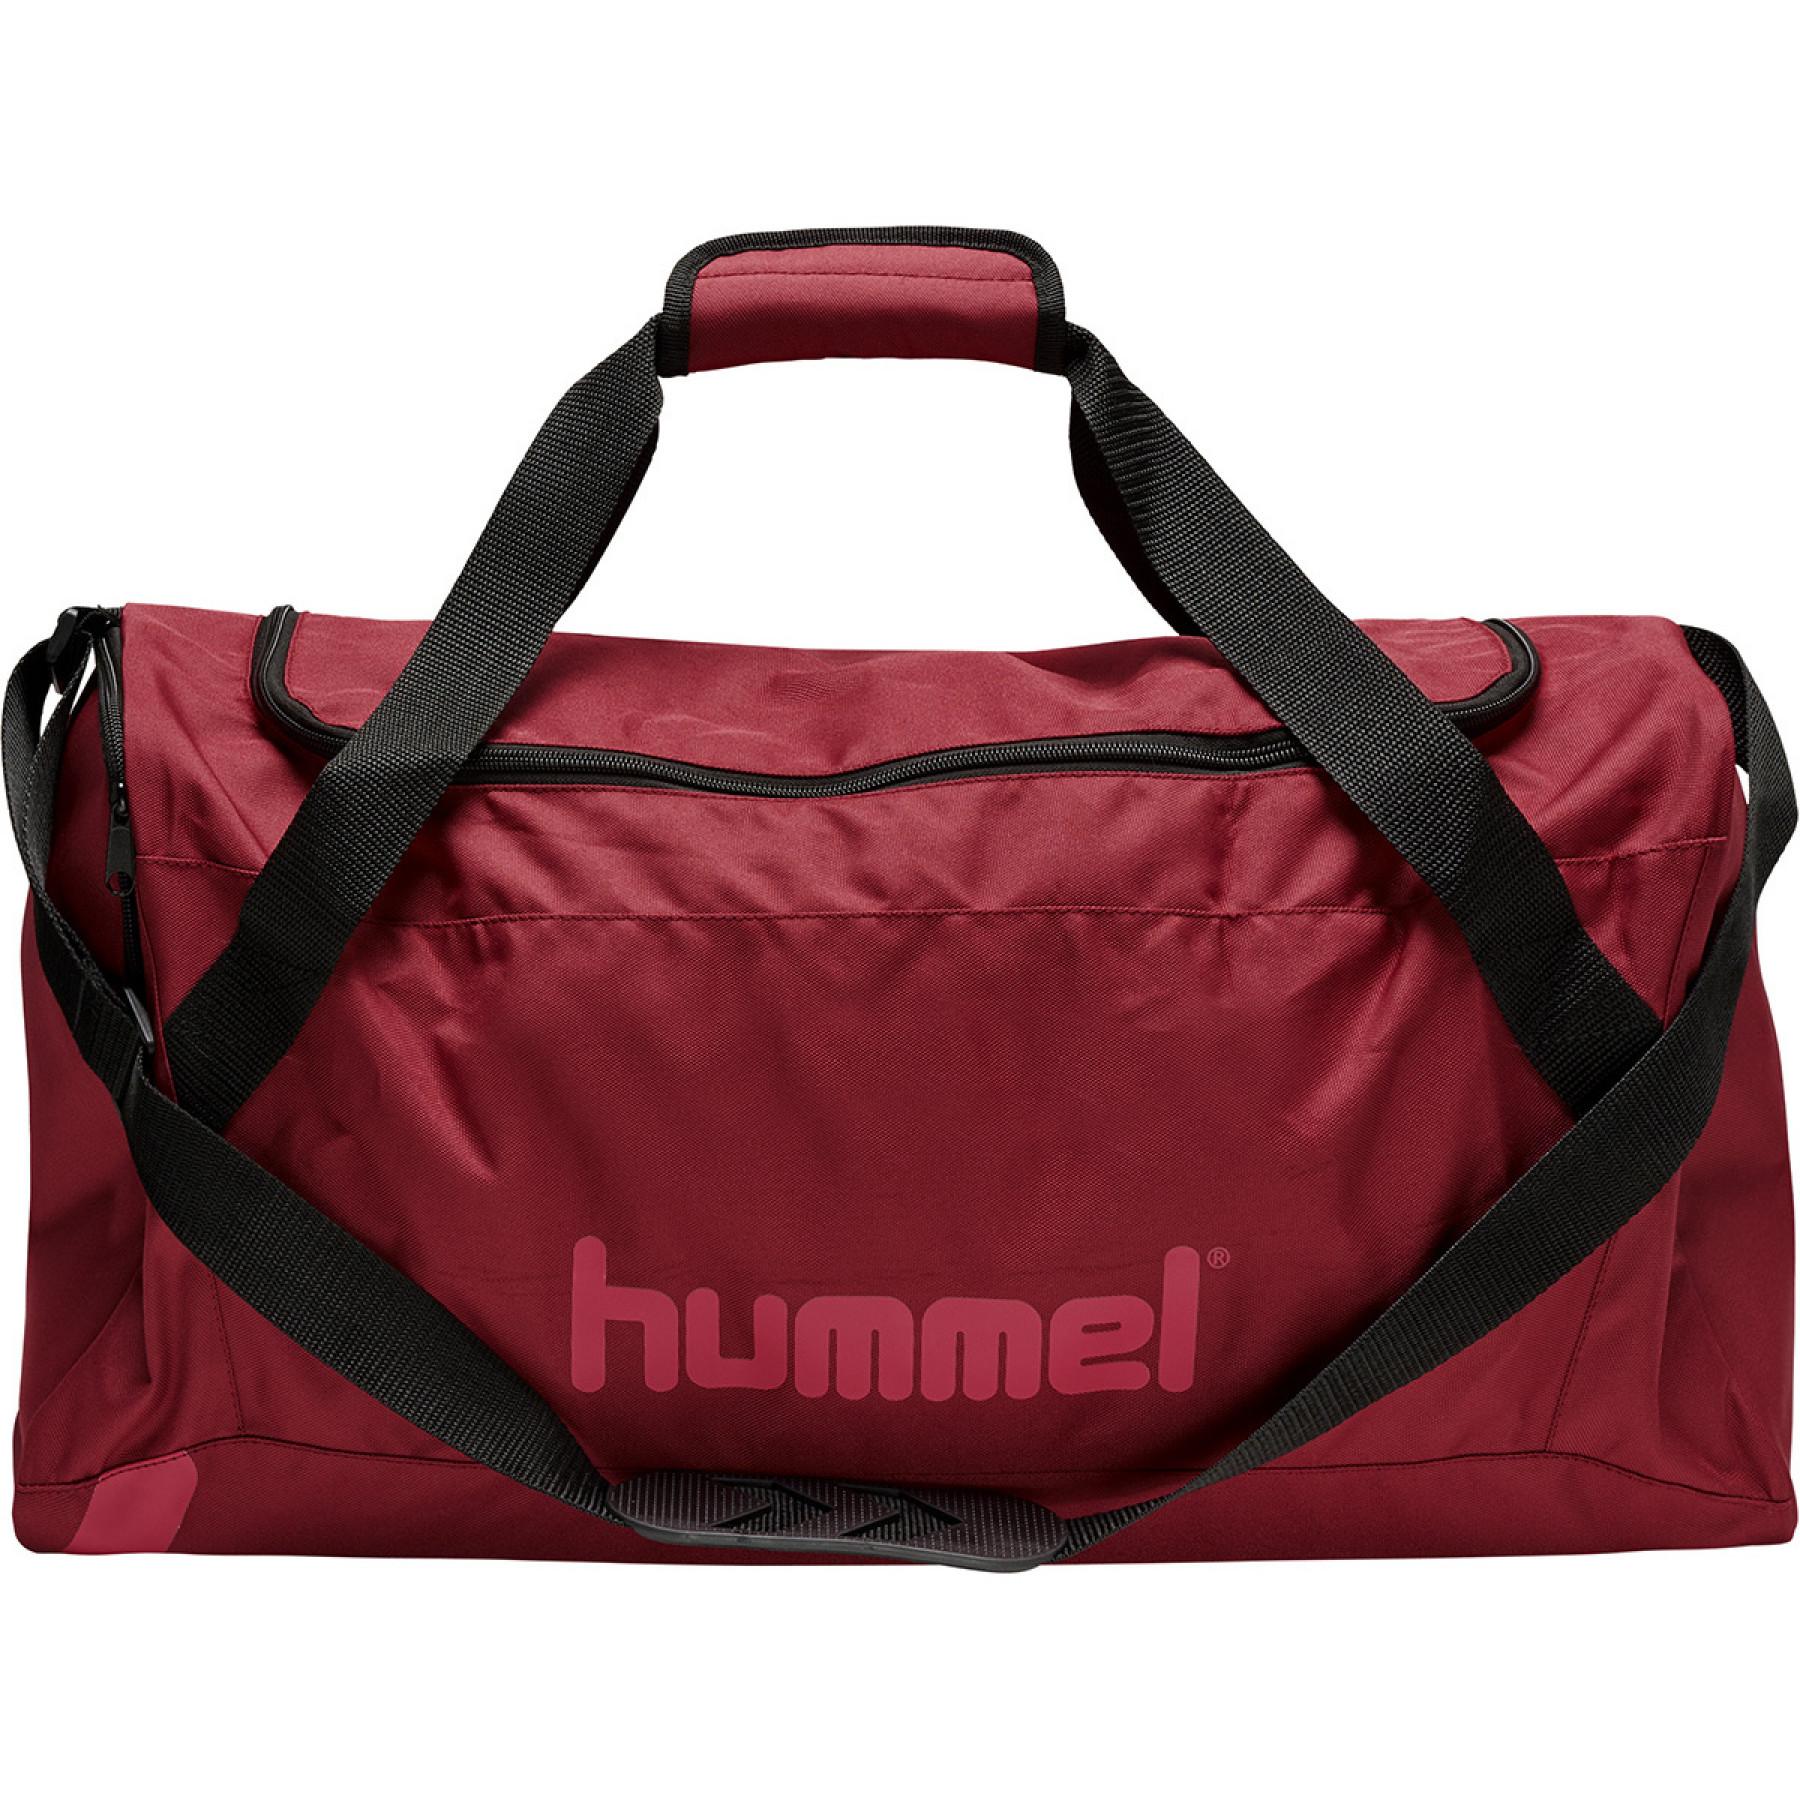 bag Hummel - Hummel - - Equipment